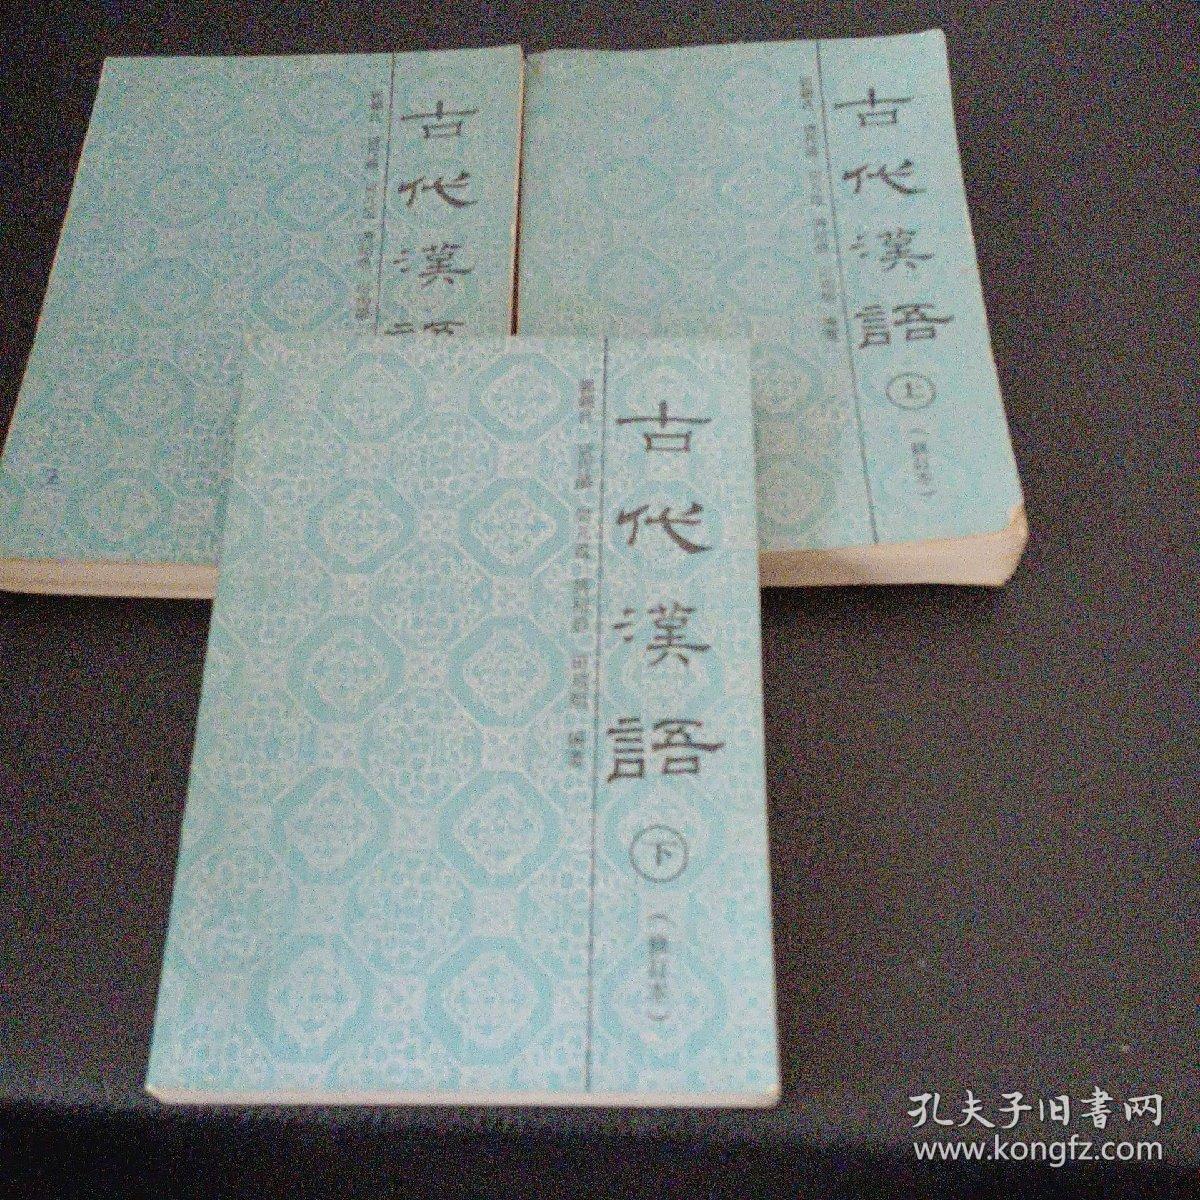 古代汉语:修订本.上